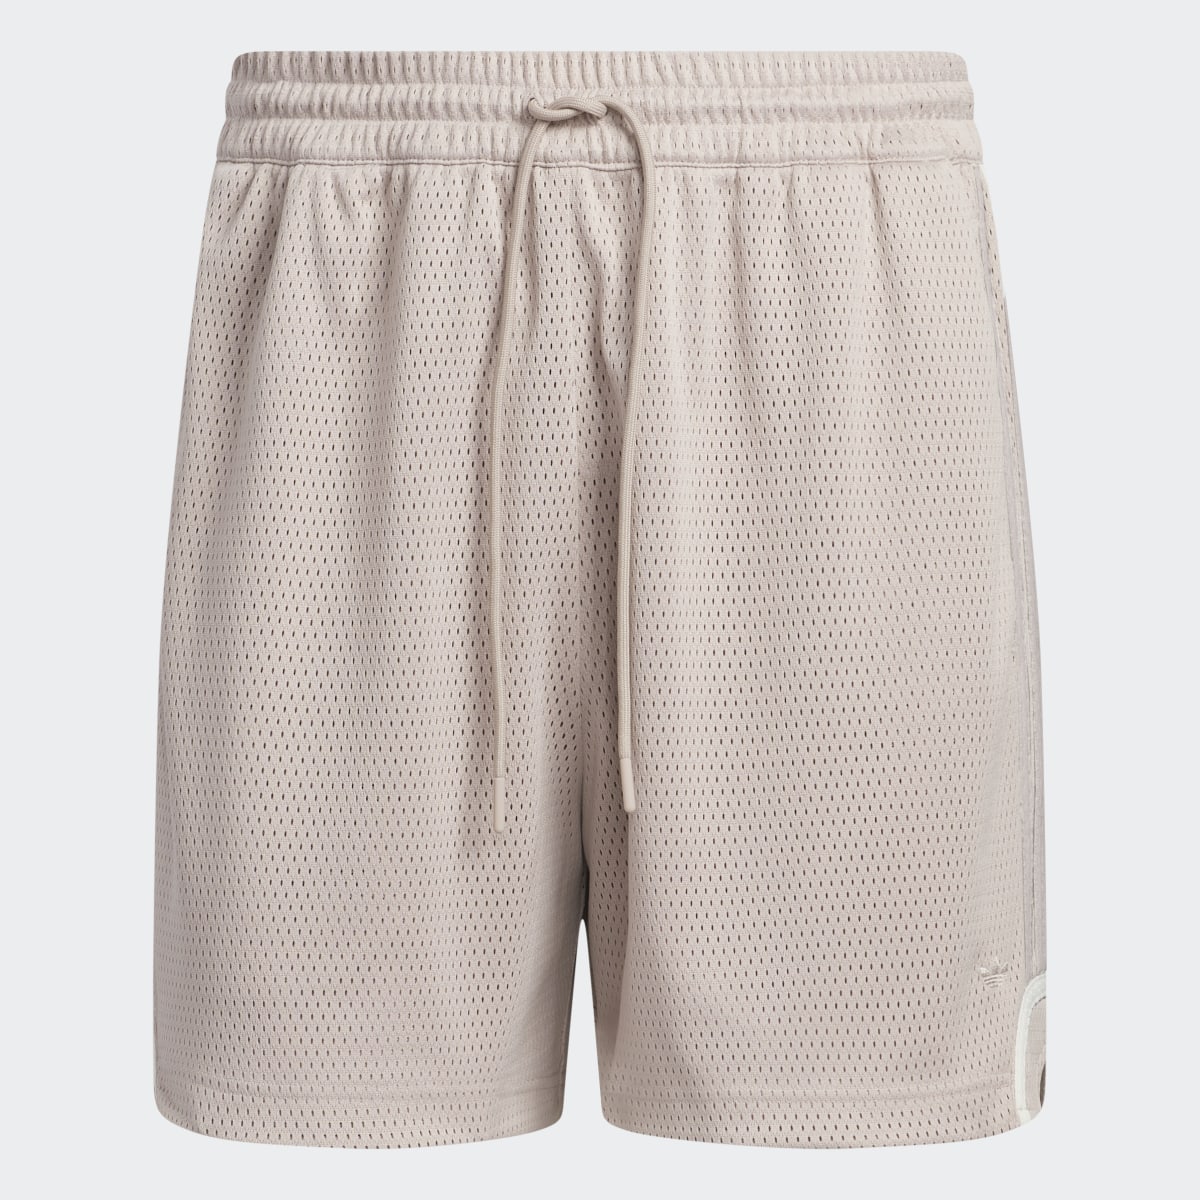 Adidas Basketball Mesh Shorts. 4